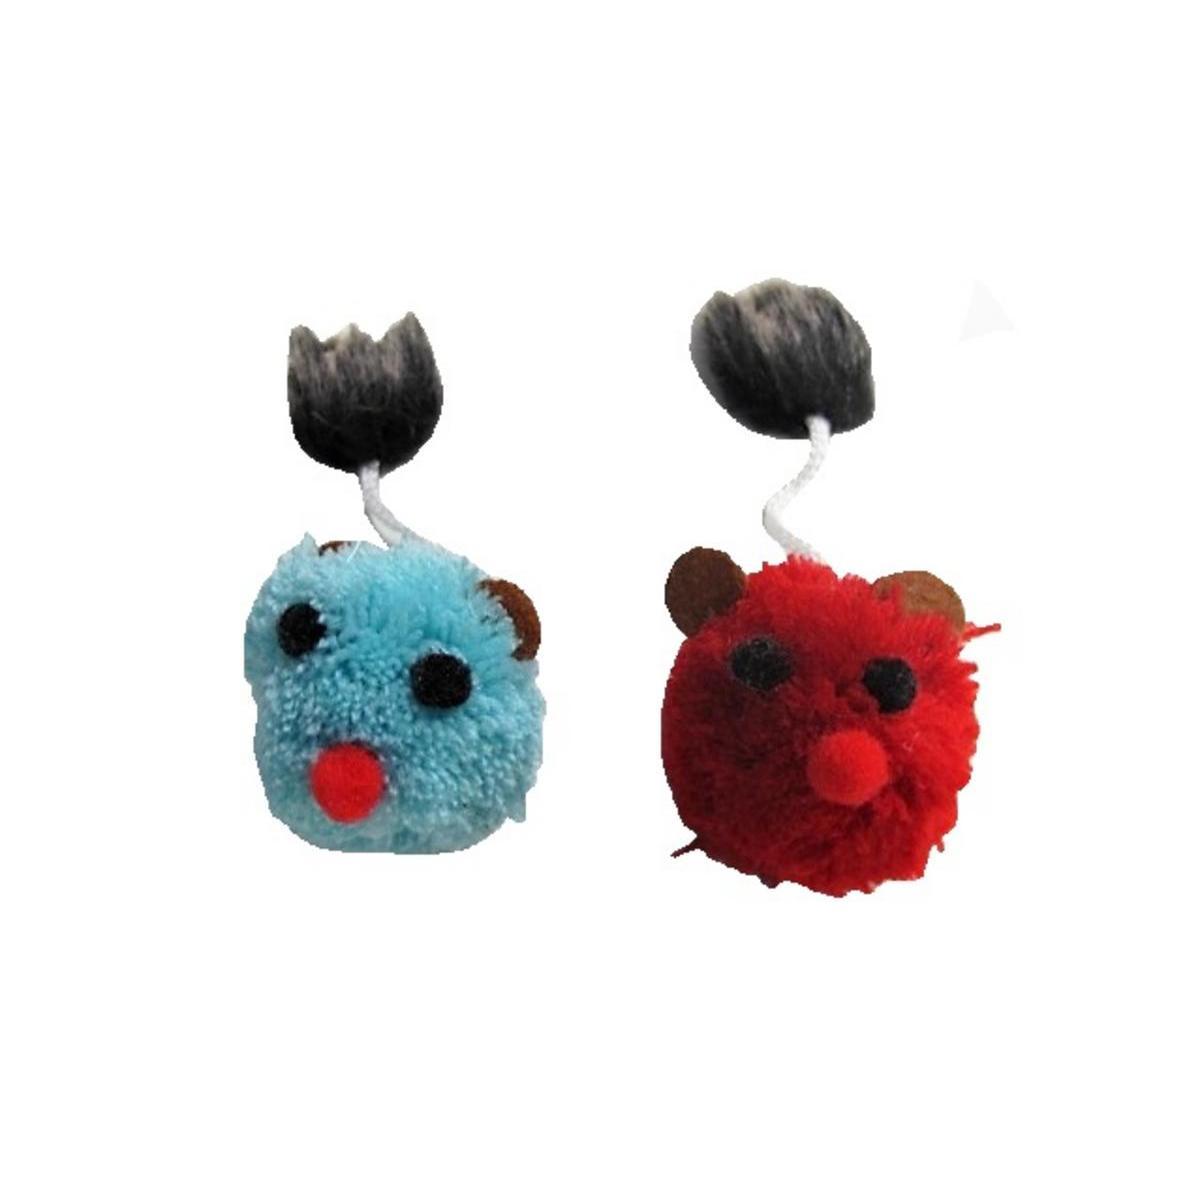 2 jouets pour chats peluche - Ø 4,5 x 12 cm - Tissu - Bleu et rouge